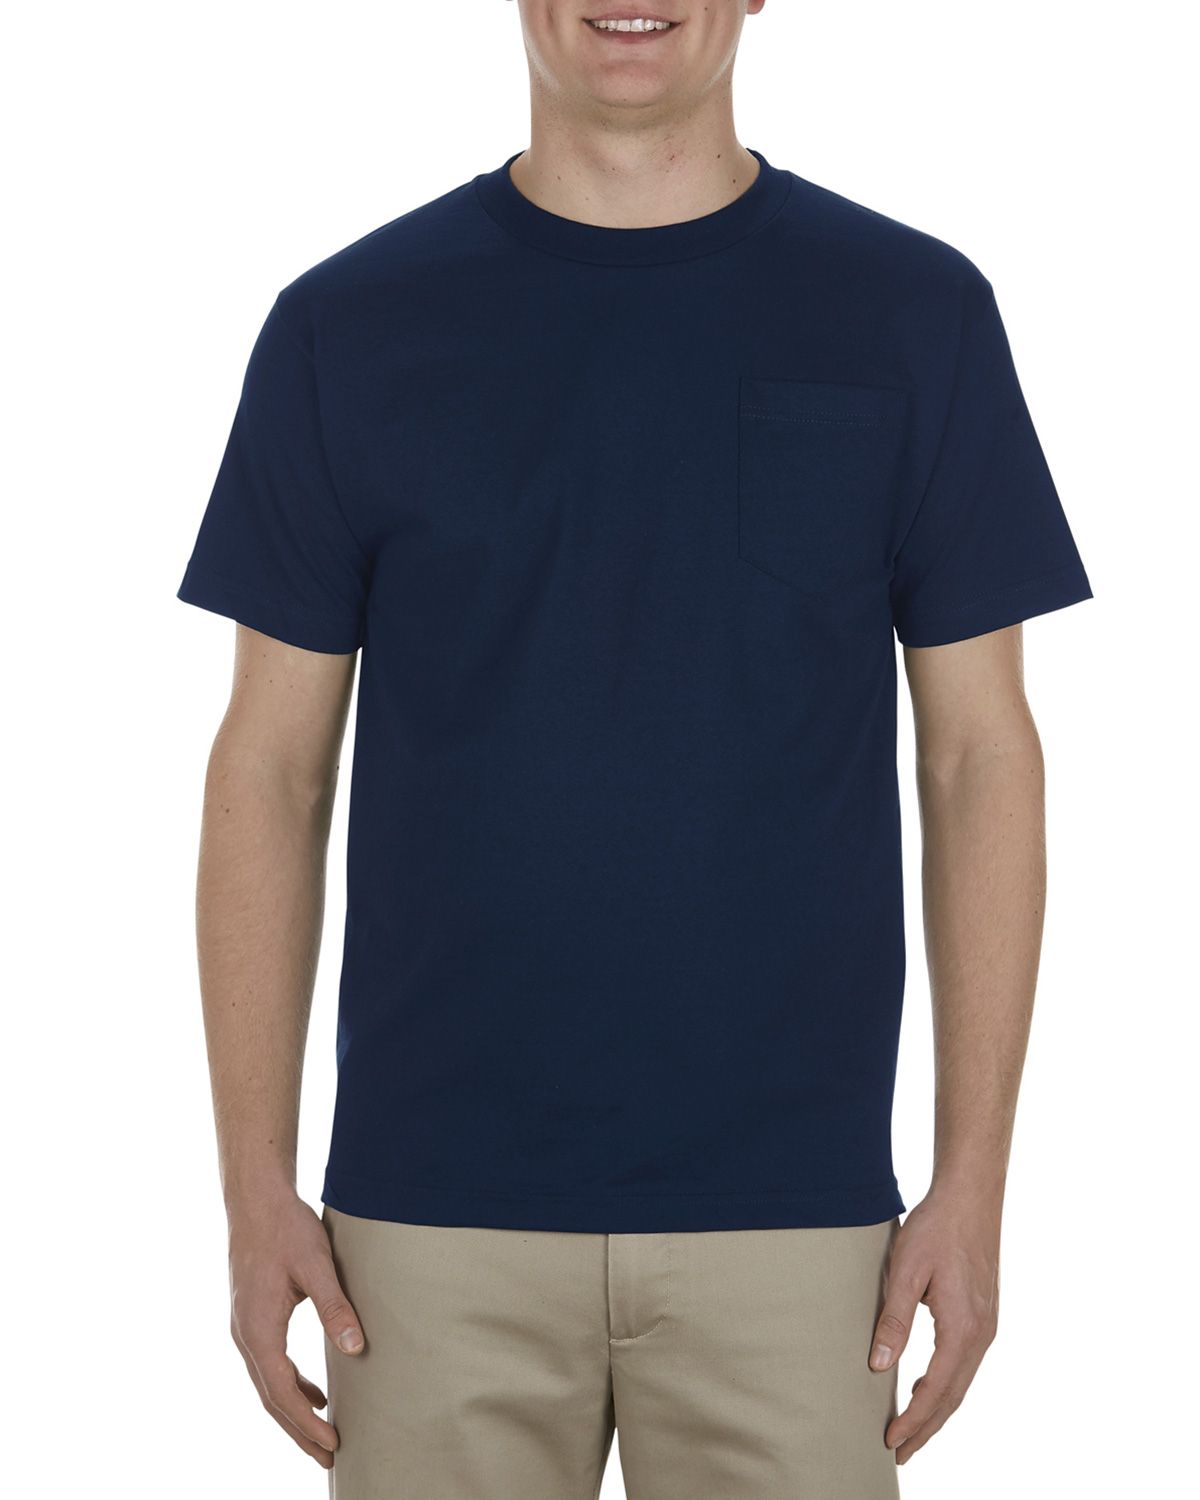 Alstyle AL1305 Men's 6.0 oz.100% Cotton Pocket T-Shirt